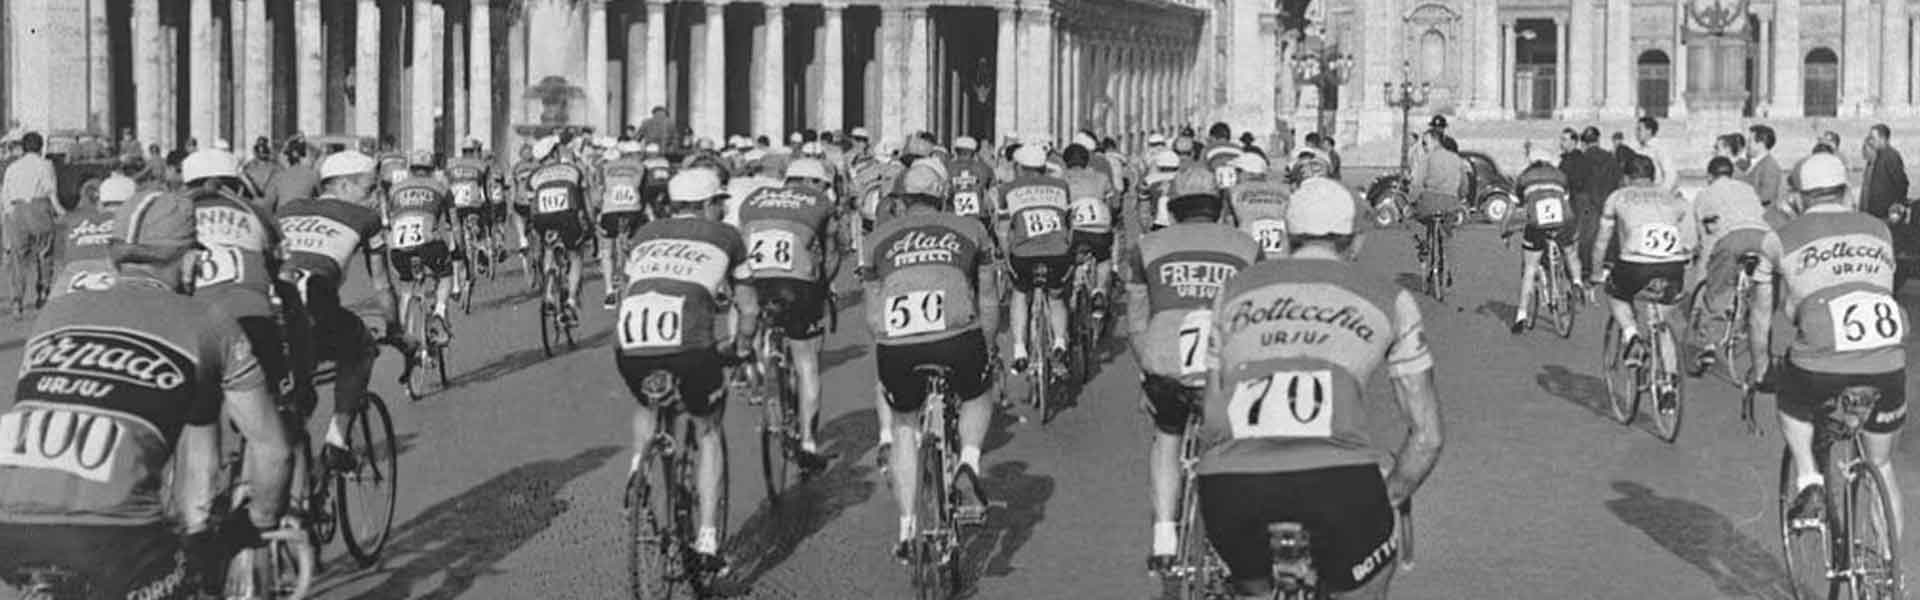 La storia e il fascino del Giro d'Italia